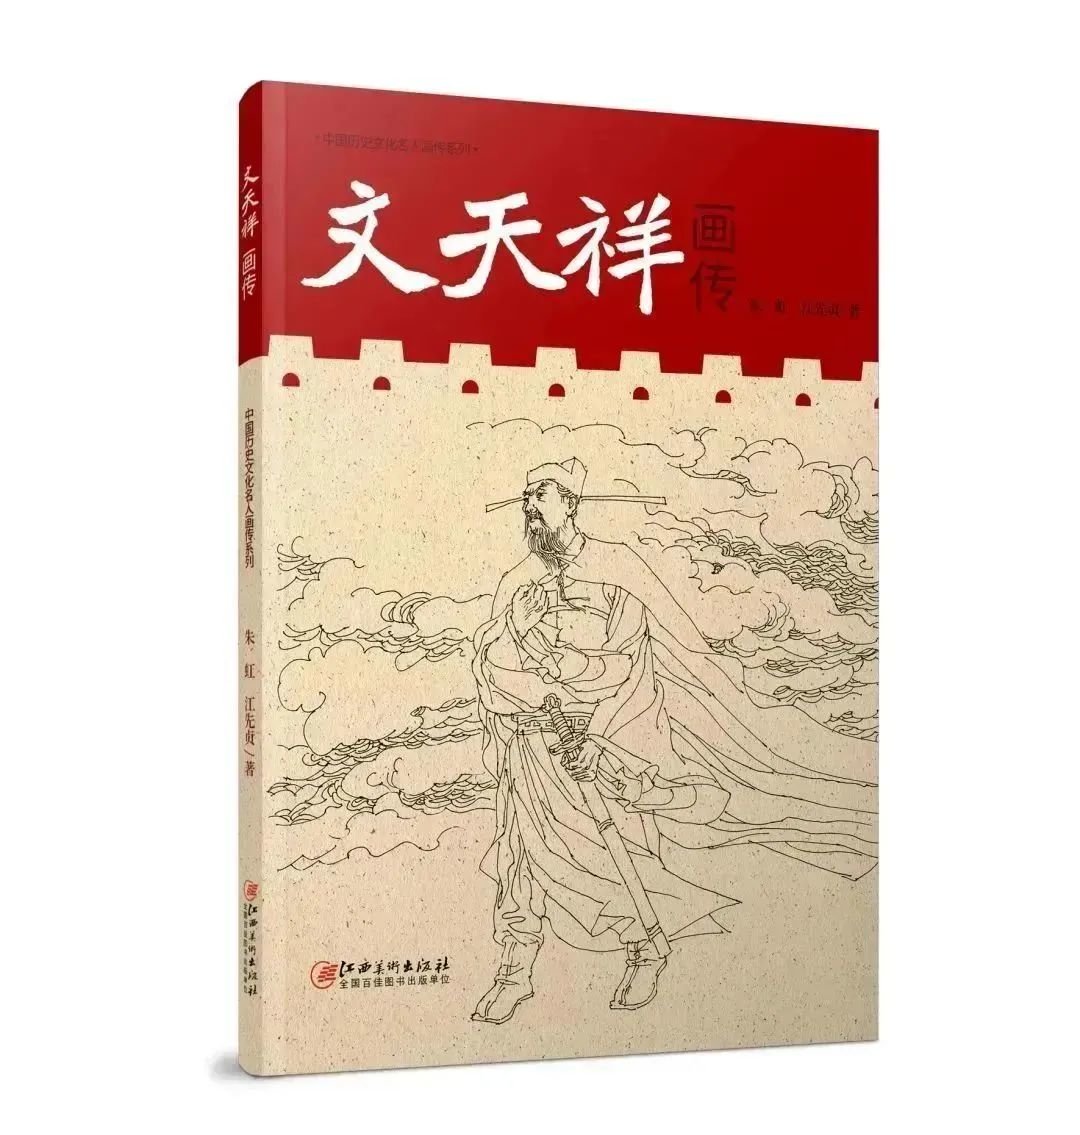 《文天祥画传》 朱虹 江先贞著 江西美术出版社出版